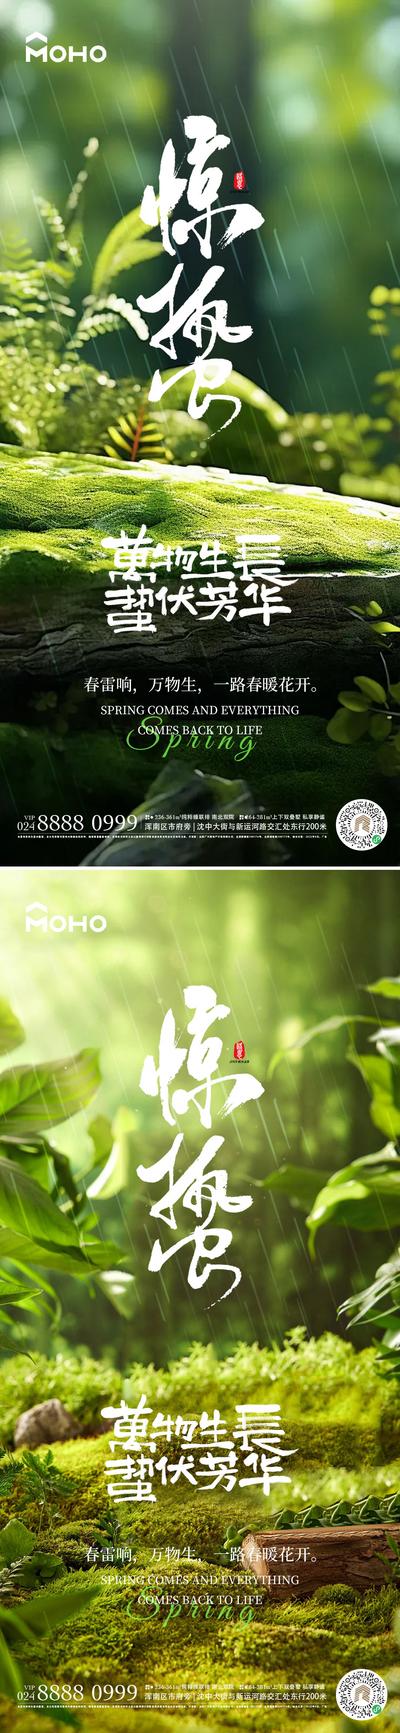 【南门网】广告 海报 节气 惊蛰 谷雨 雨水 惊雷 春天 春 24节气 自然 花